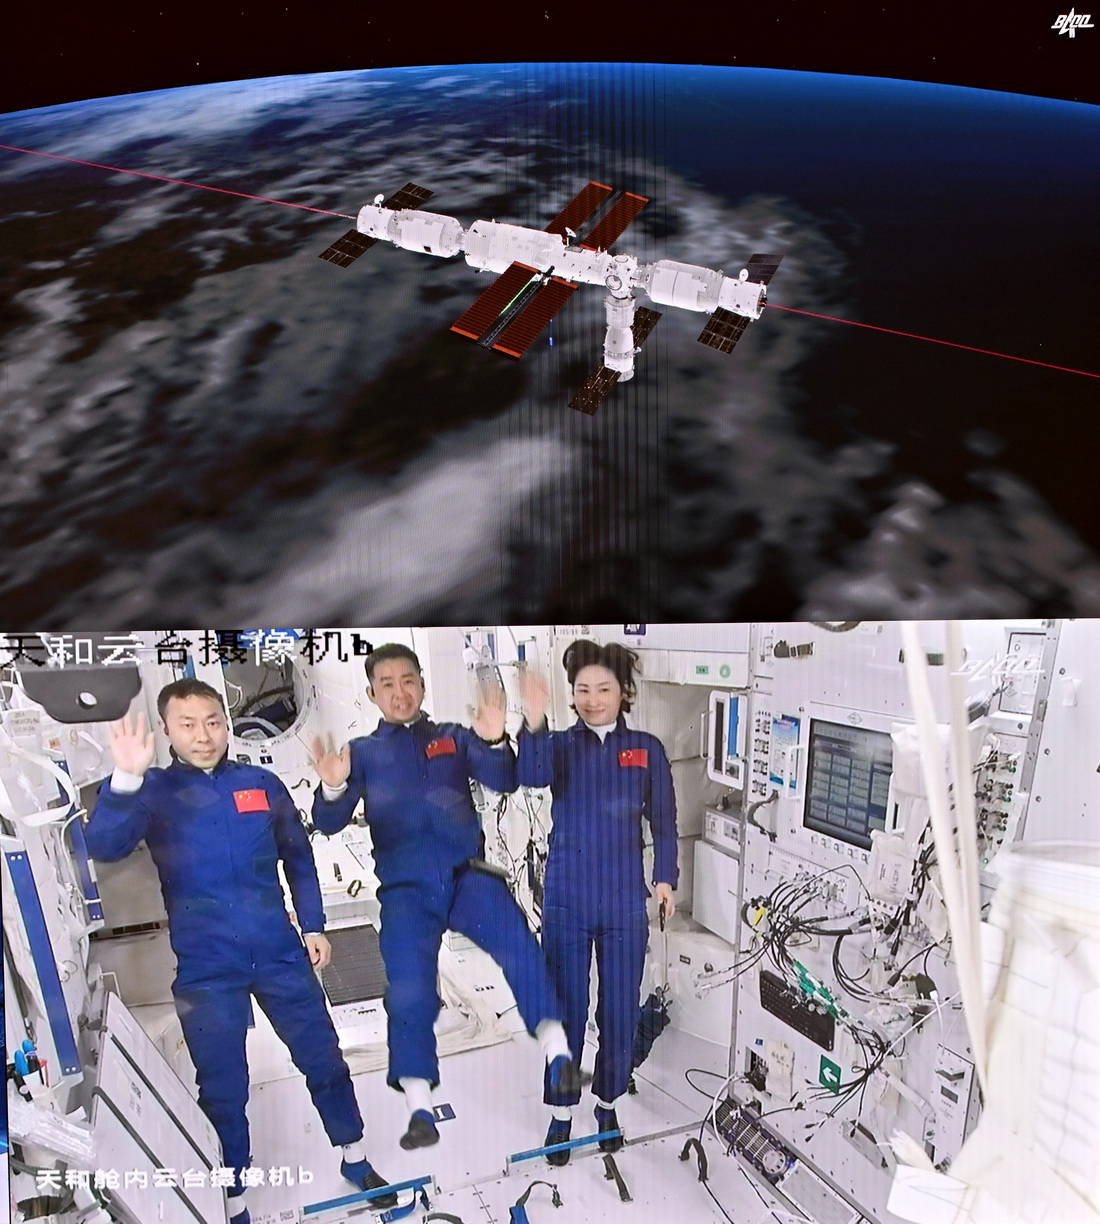 6月5日在北京航天飞行控制中心拍摄的进驻天和核心舱的航天员陈冬（中）、刘洋（右）、蔡旭哲向全国人民挥手致意的画面。